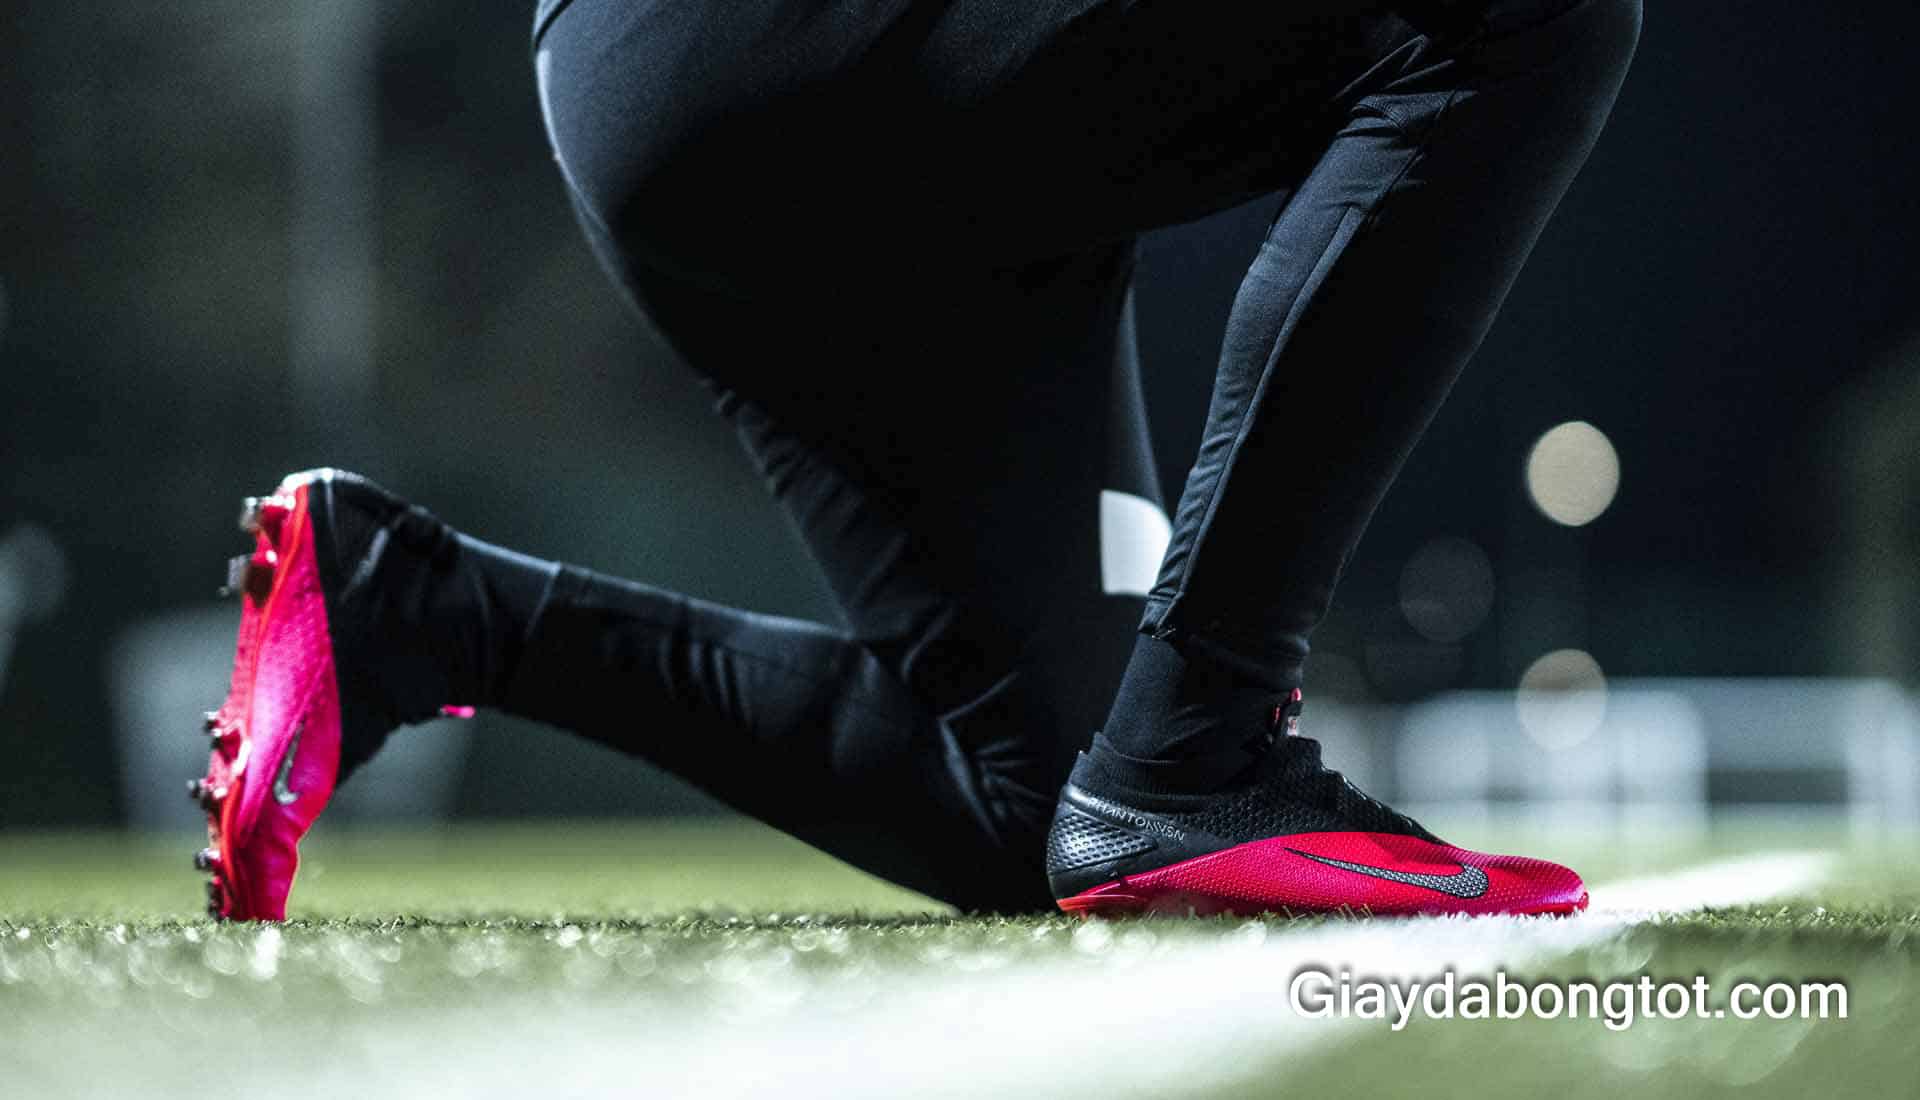 Giày đá bóng sân cỏ tự nhiên của cầu thủ chuyên nghiệp có mức giá khá cao